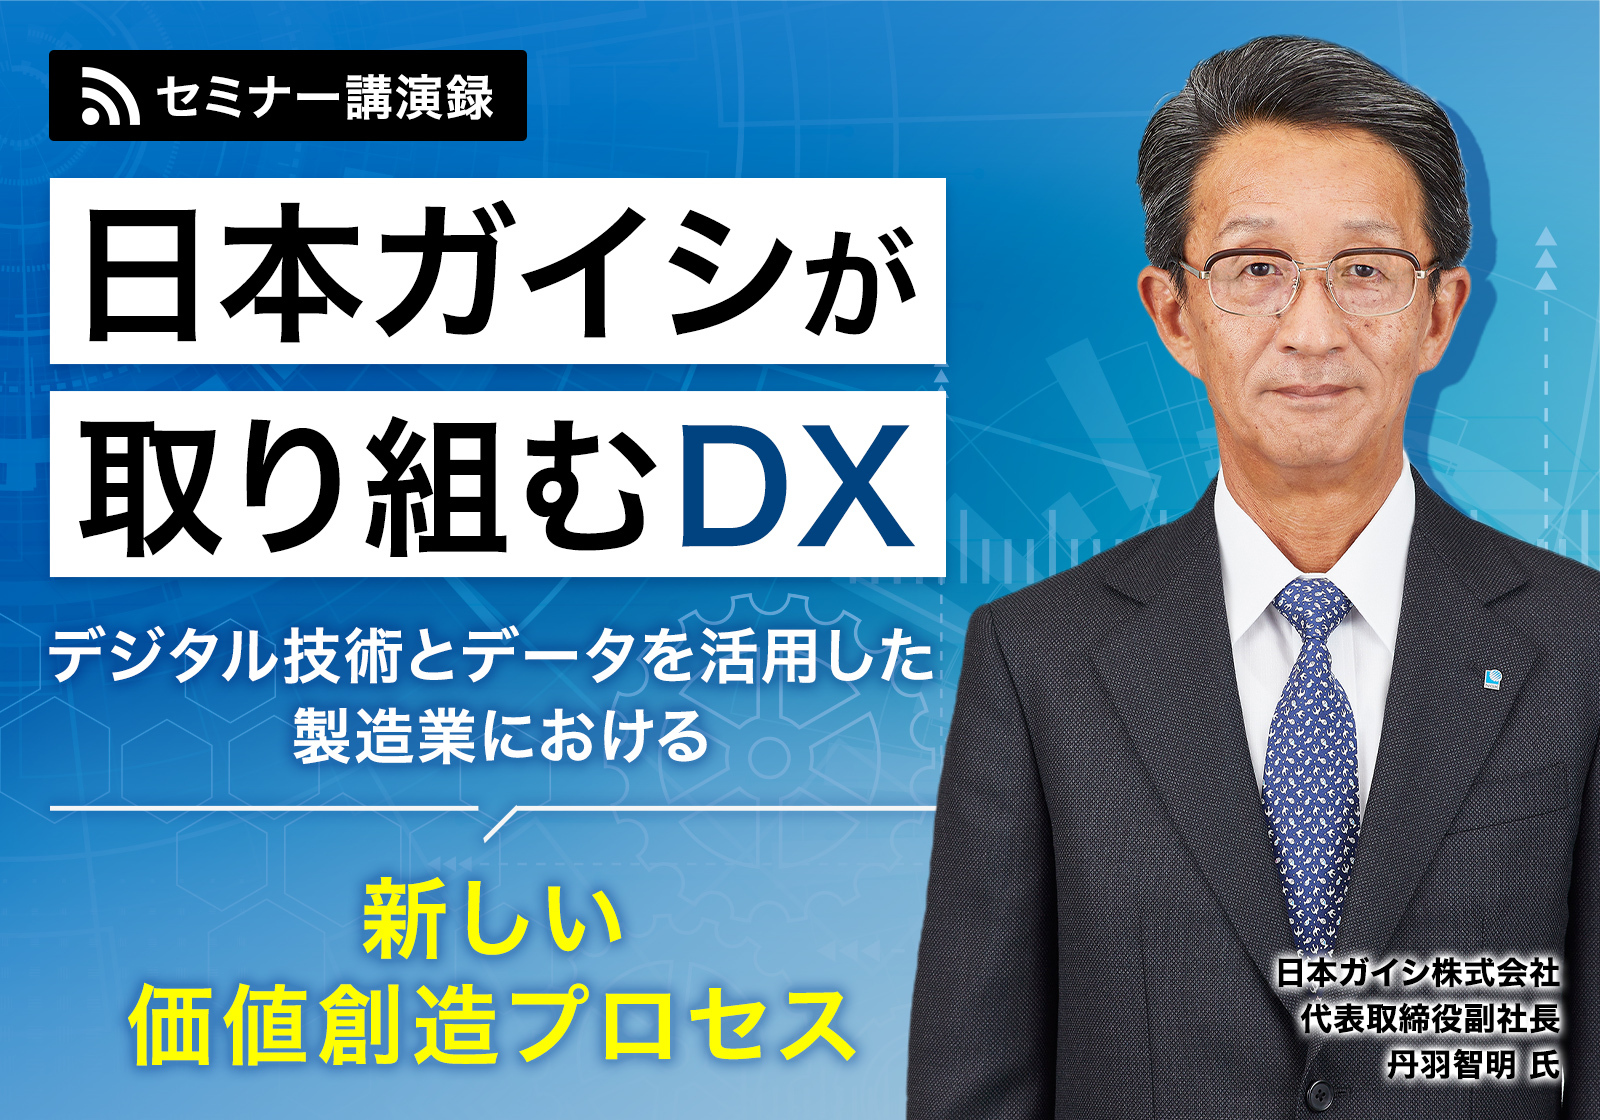 日本ガイシが取り組むDX 組織でデジタル技術とデータを活用するポイントとは